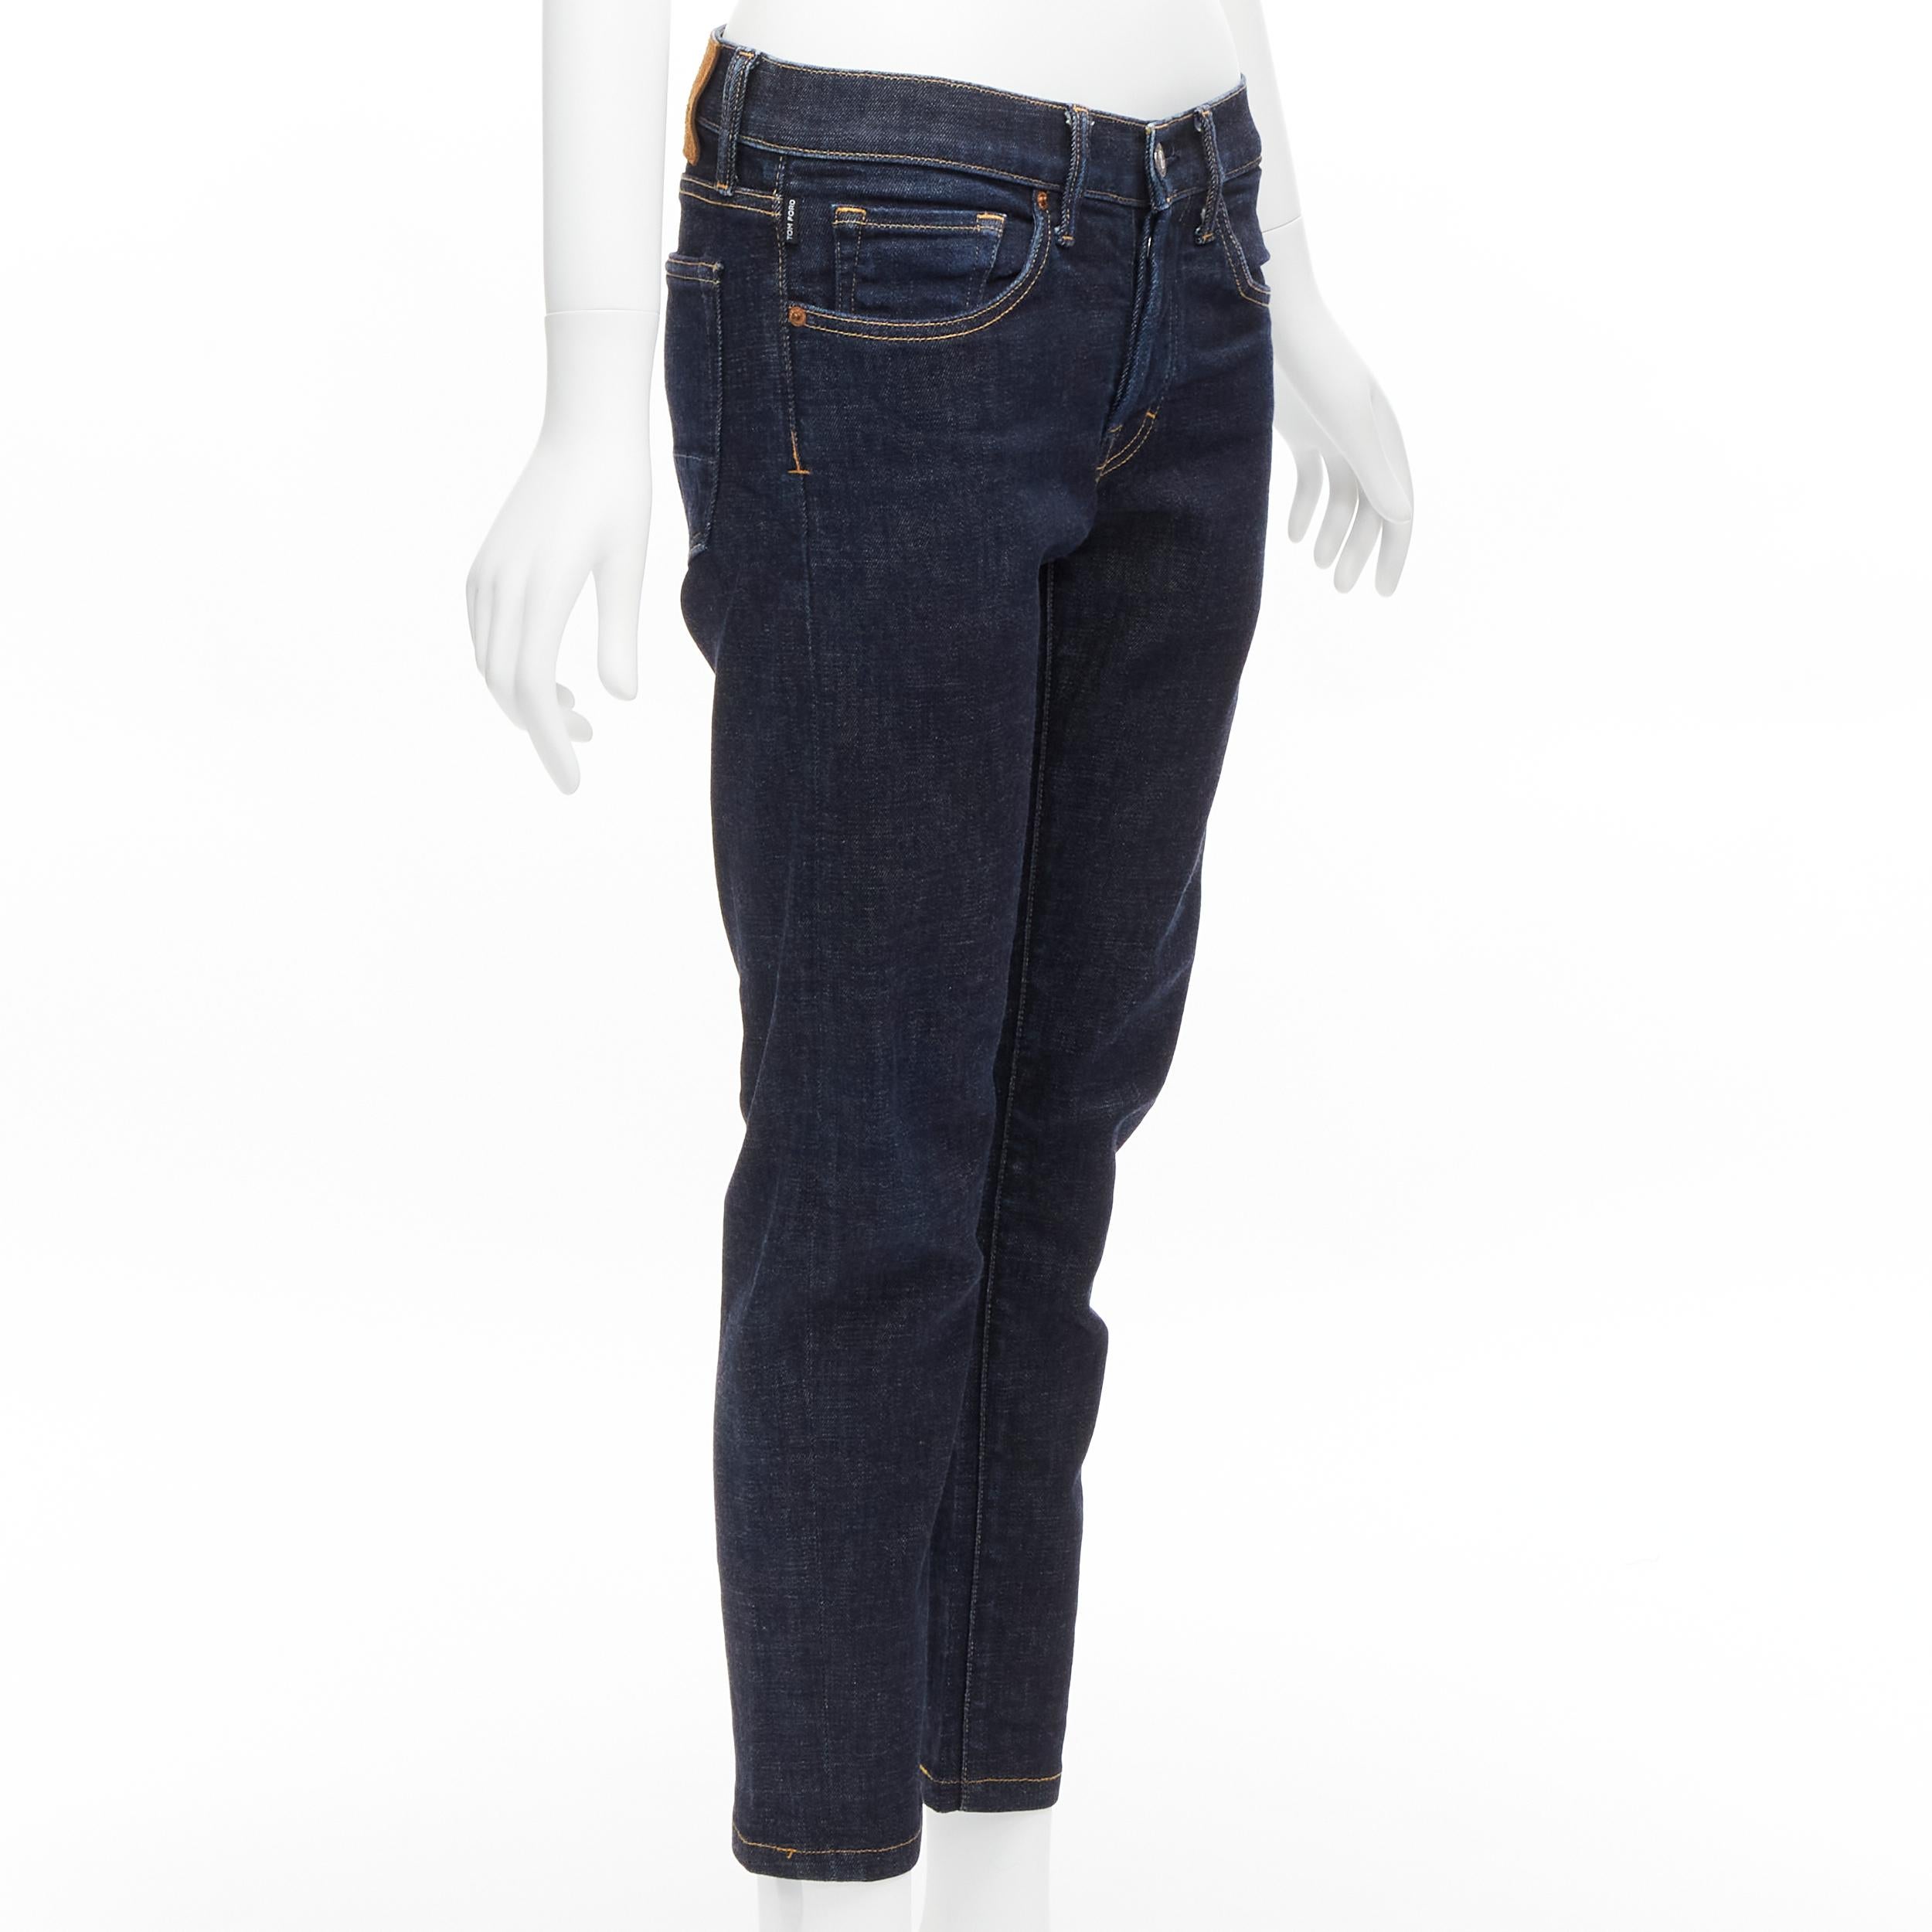 Noir Jeans cropped TOM FORD bleu foncé classique en denim délavé avec étiquette logo 28